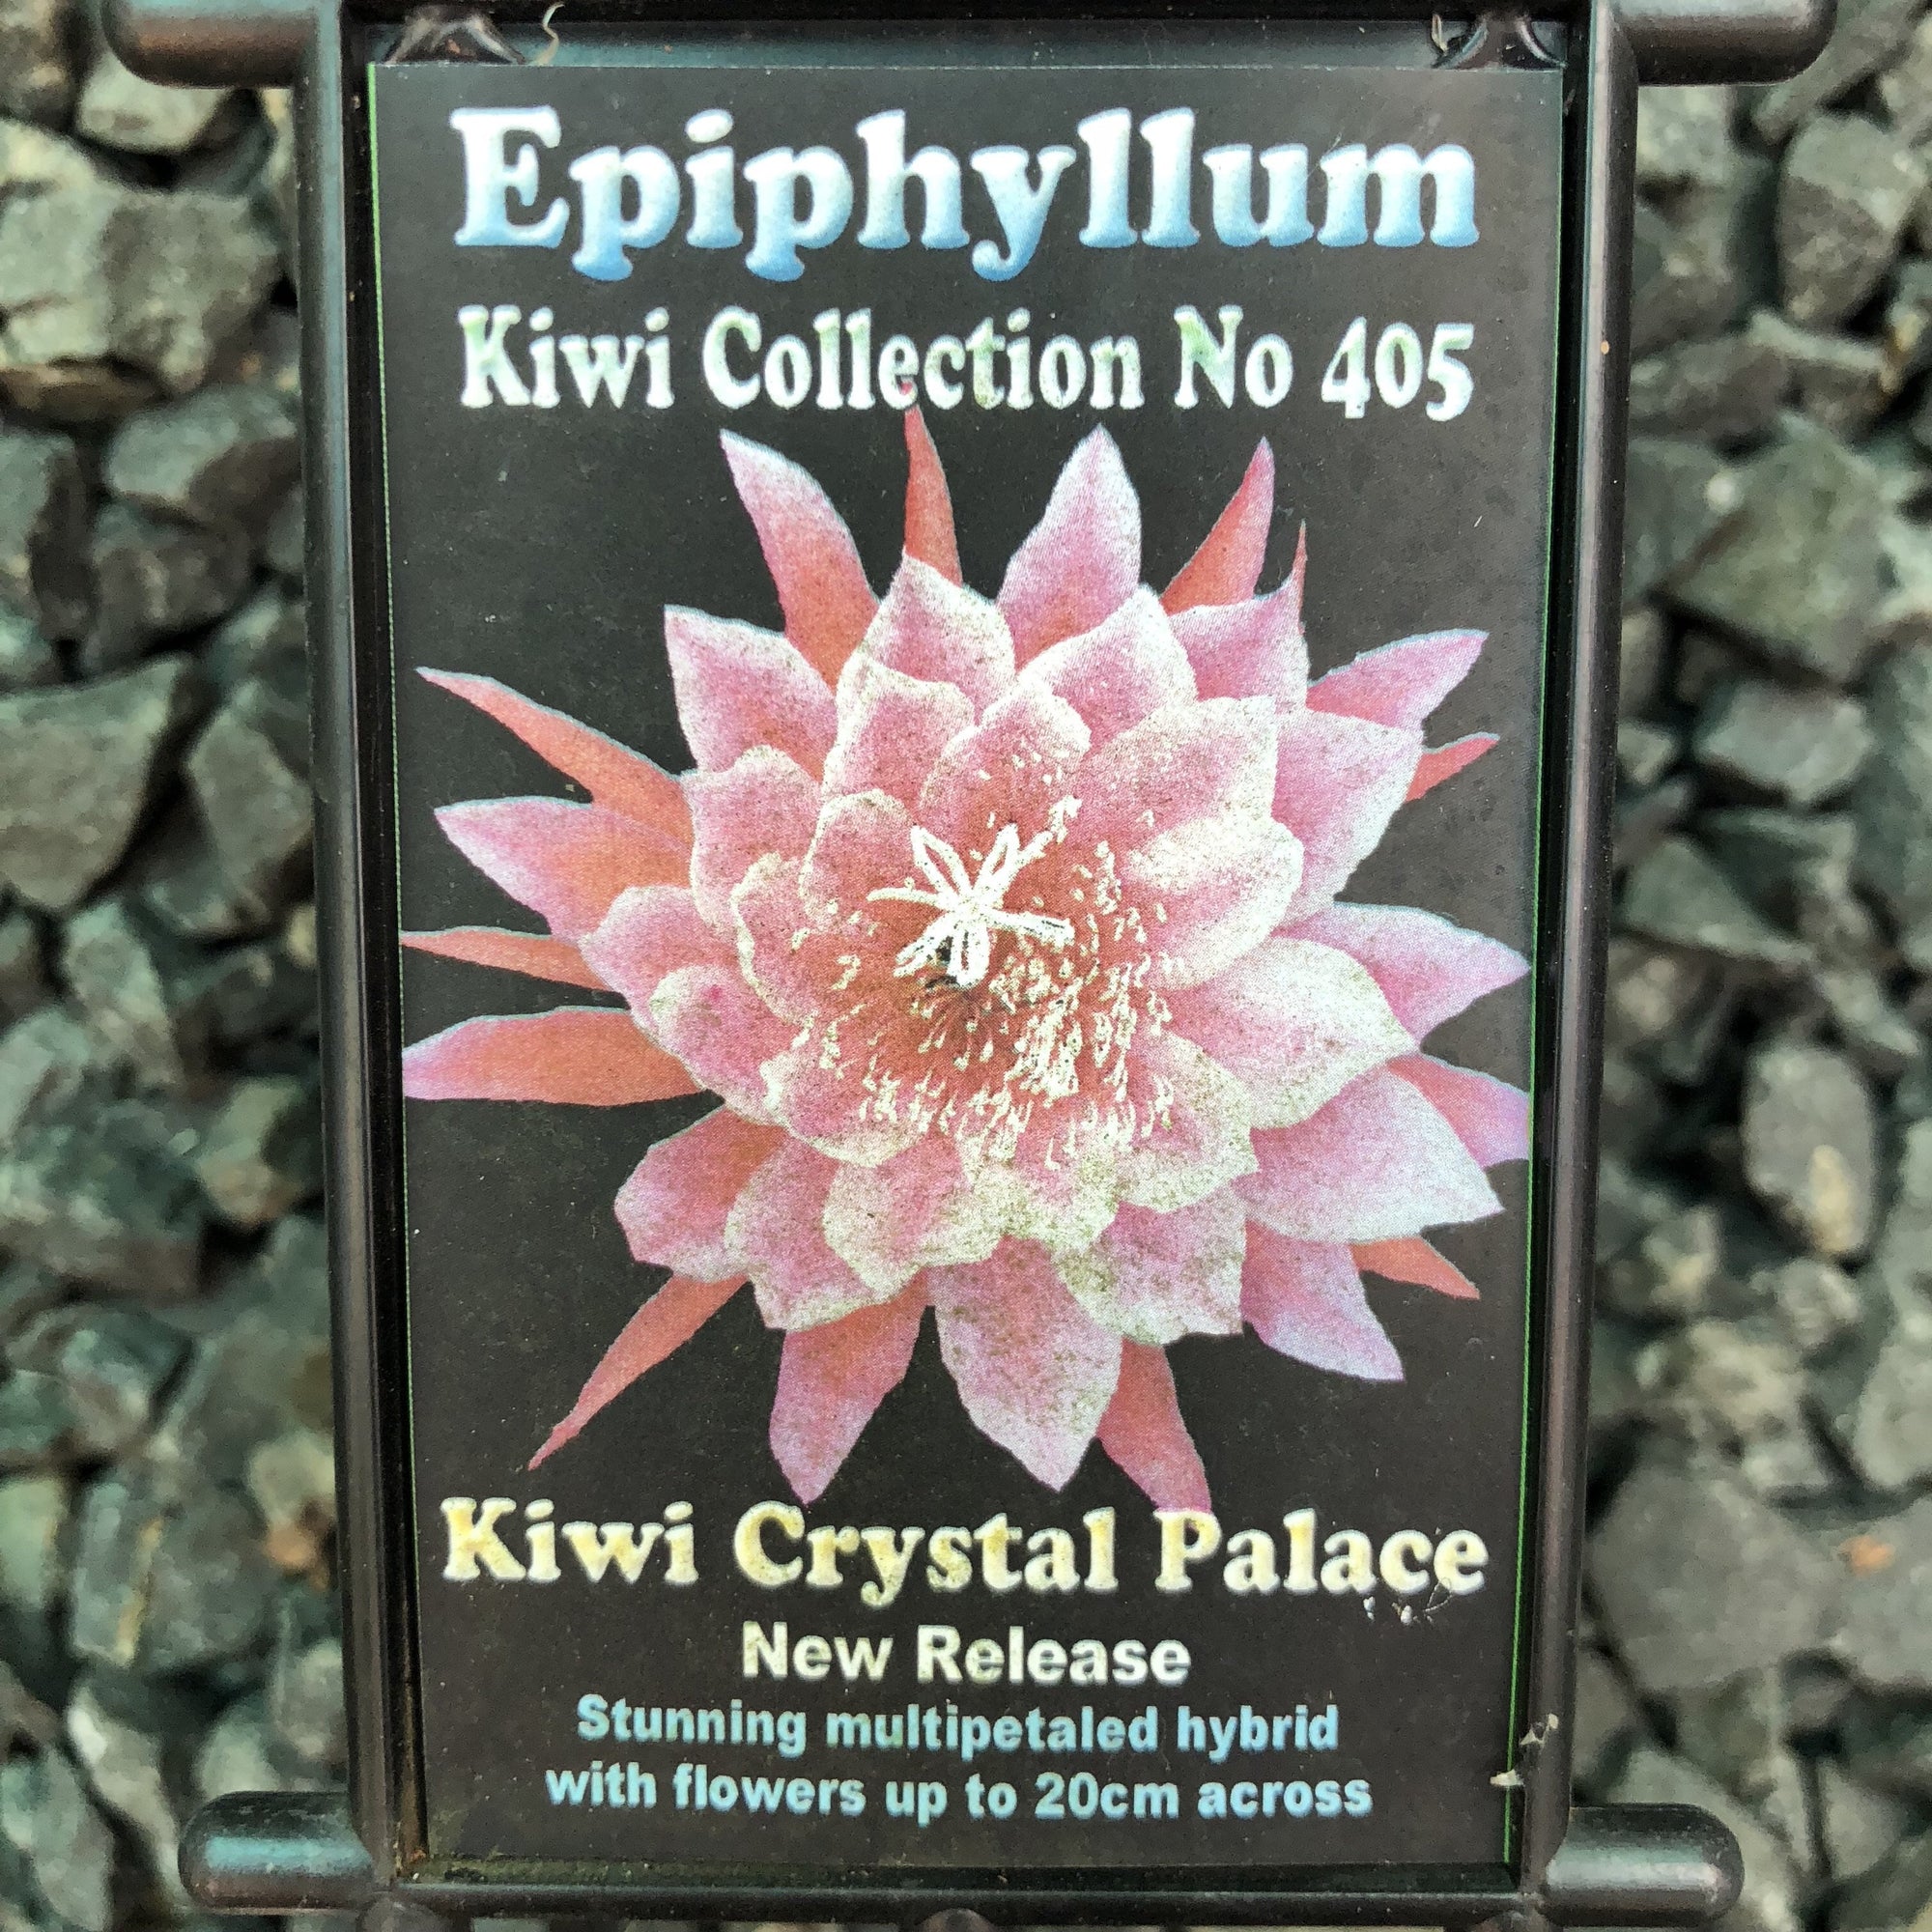 Epi. Hybrid Kiwi Crystal Palace